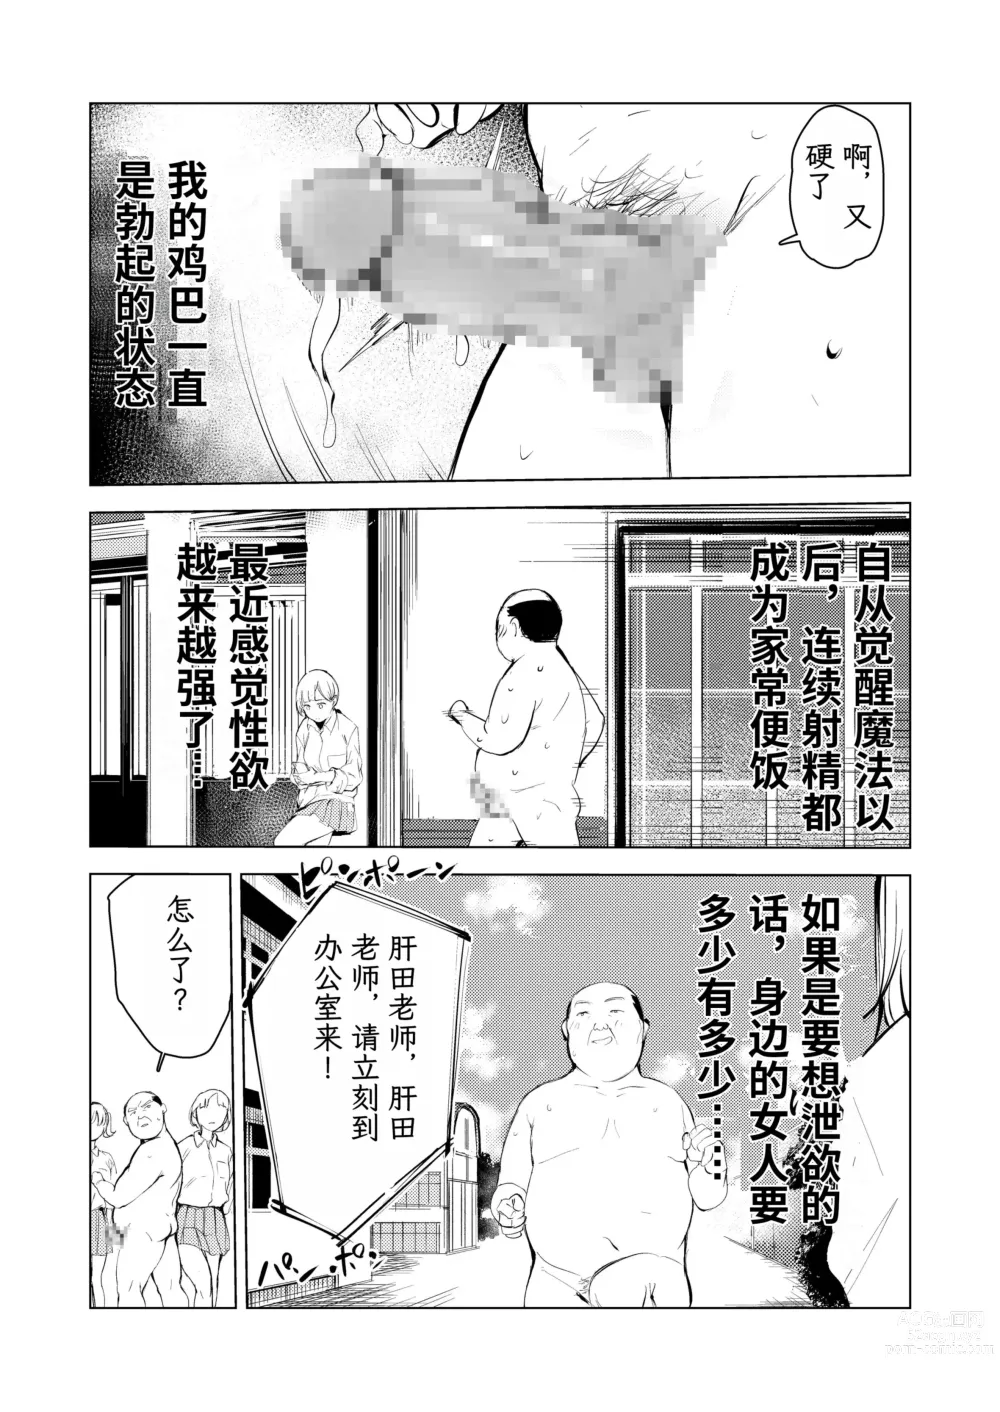 Page 8 of doujinshi 40-sai no Mahoutsukai 3